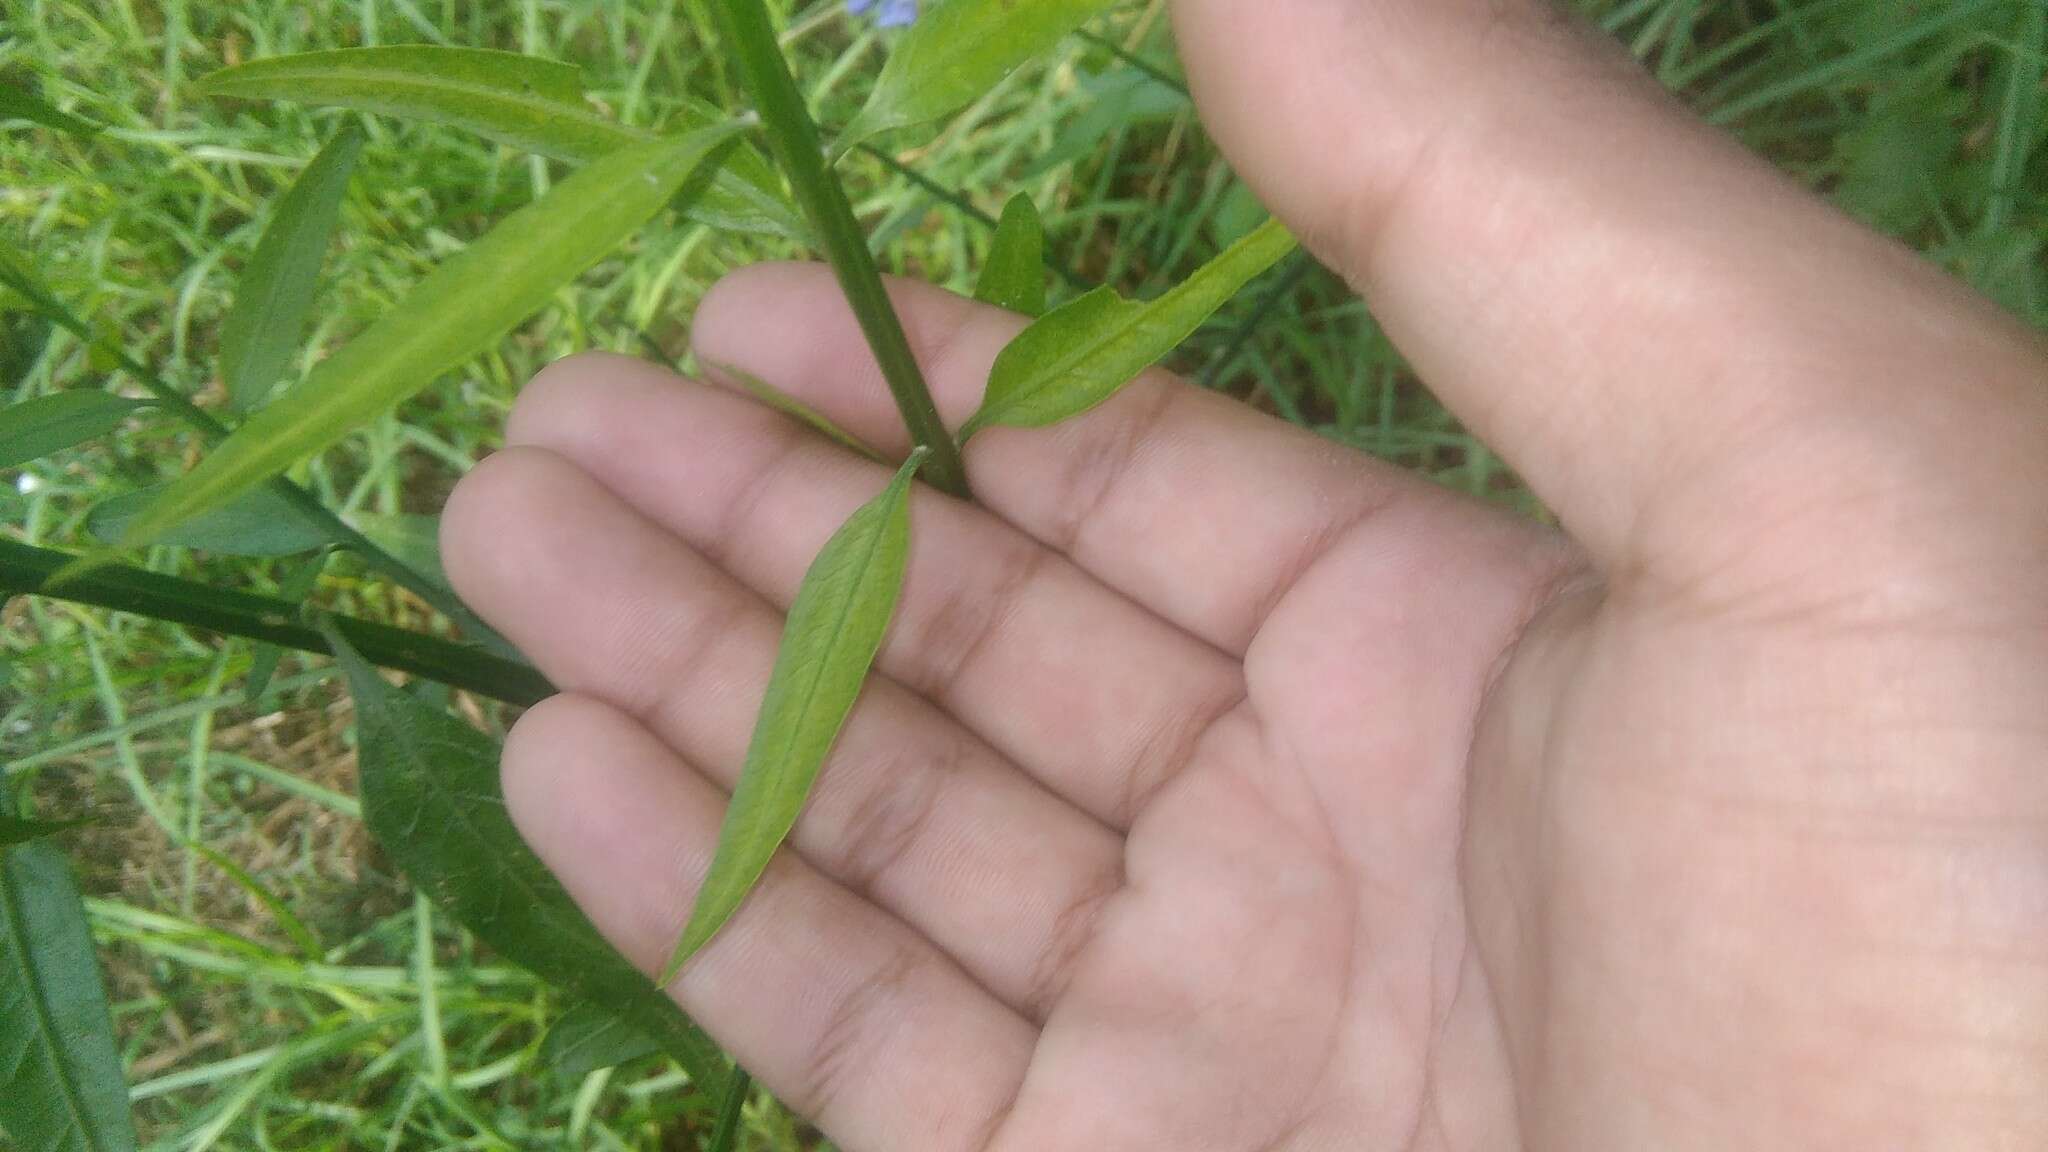 Image of Solanum amygdalifolium Steud.